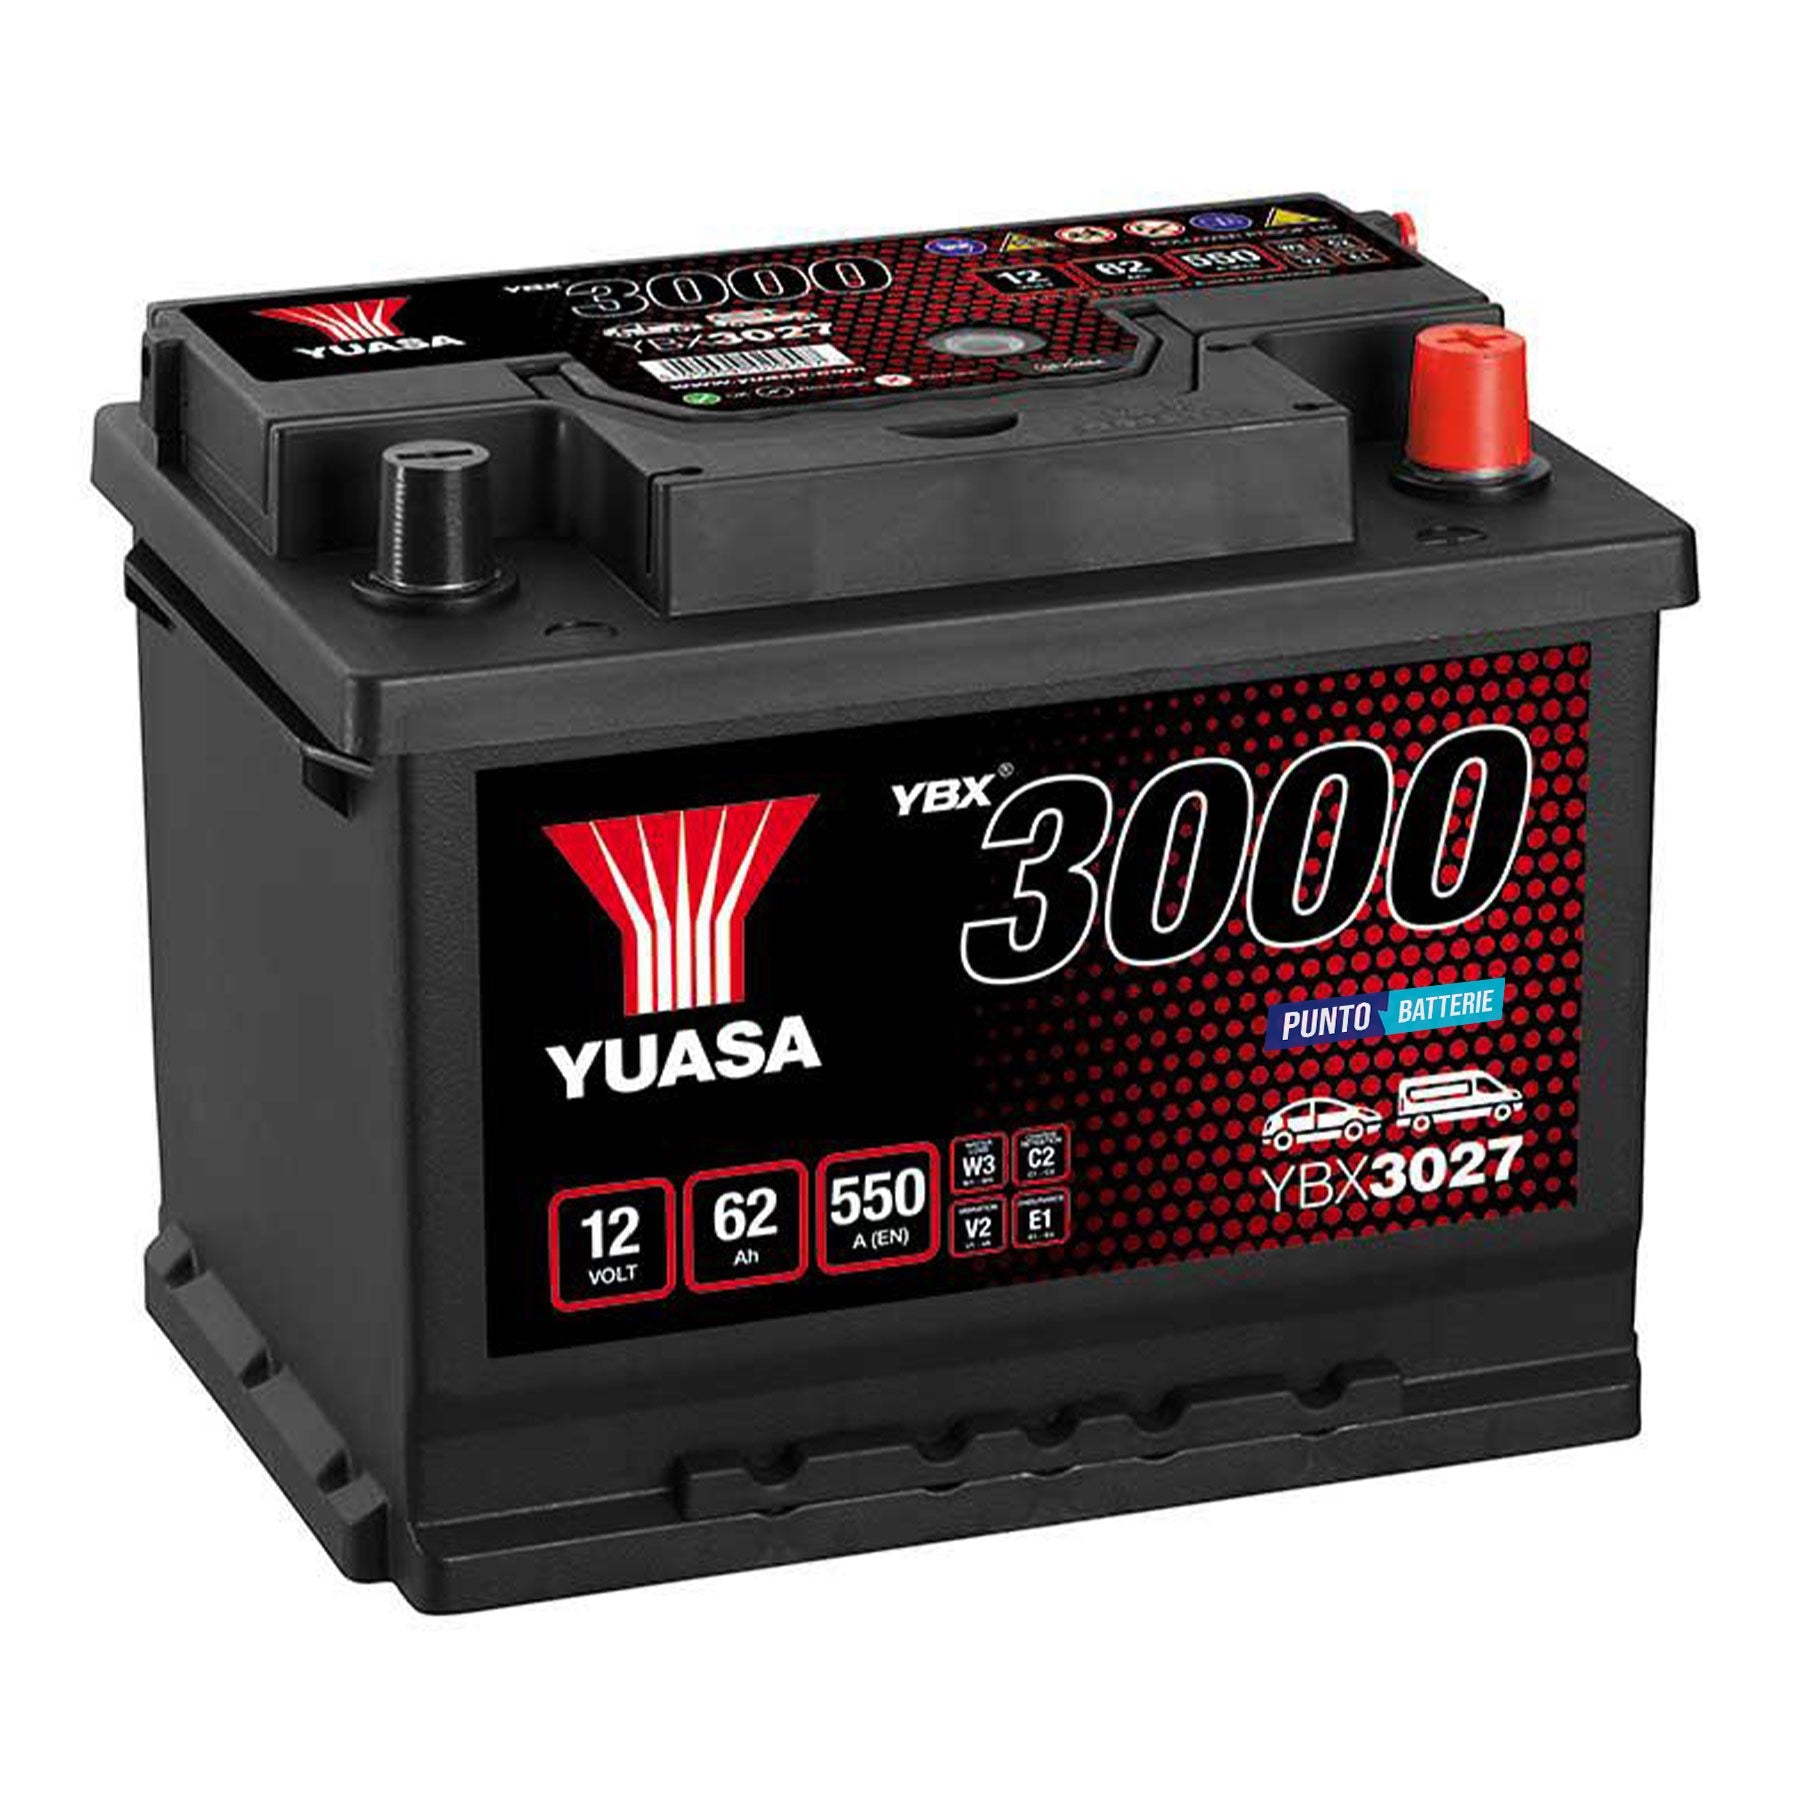 Batteria originale Yuasa YBX3000 YBX3027, dimensioni 242 x 175 x 190, polo positivo a destra, 12 volt, 62 amperora, 550 ampere. Batteria per auto e veicoli leggeri.